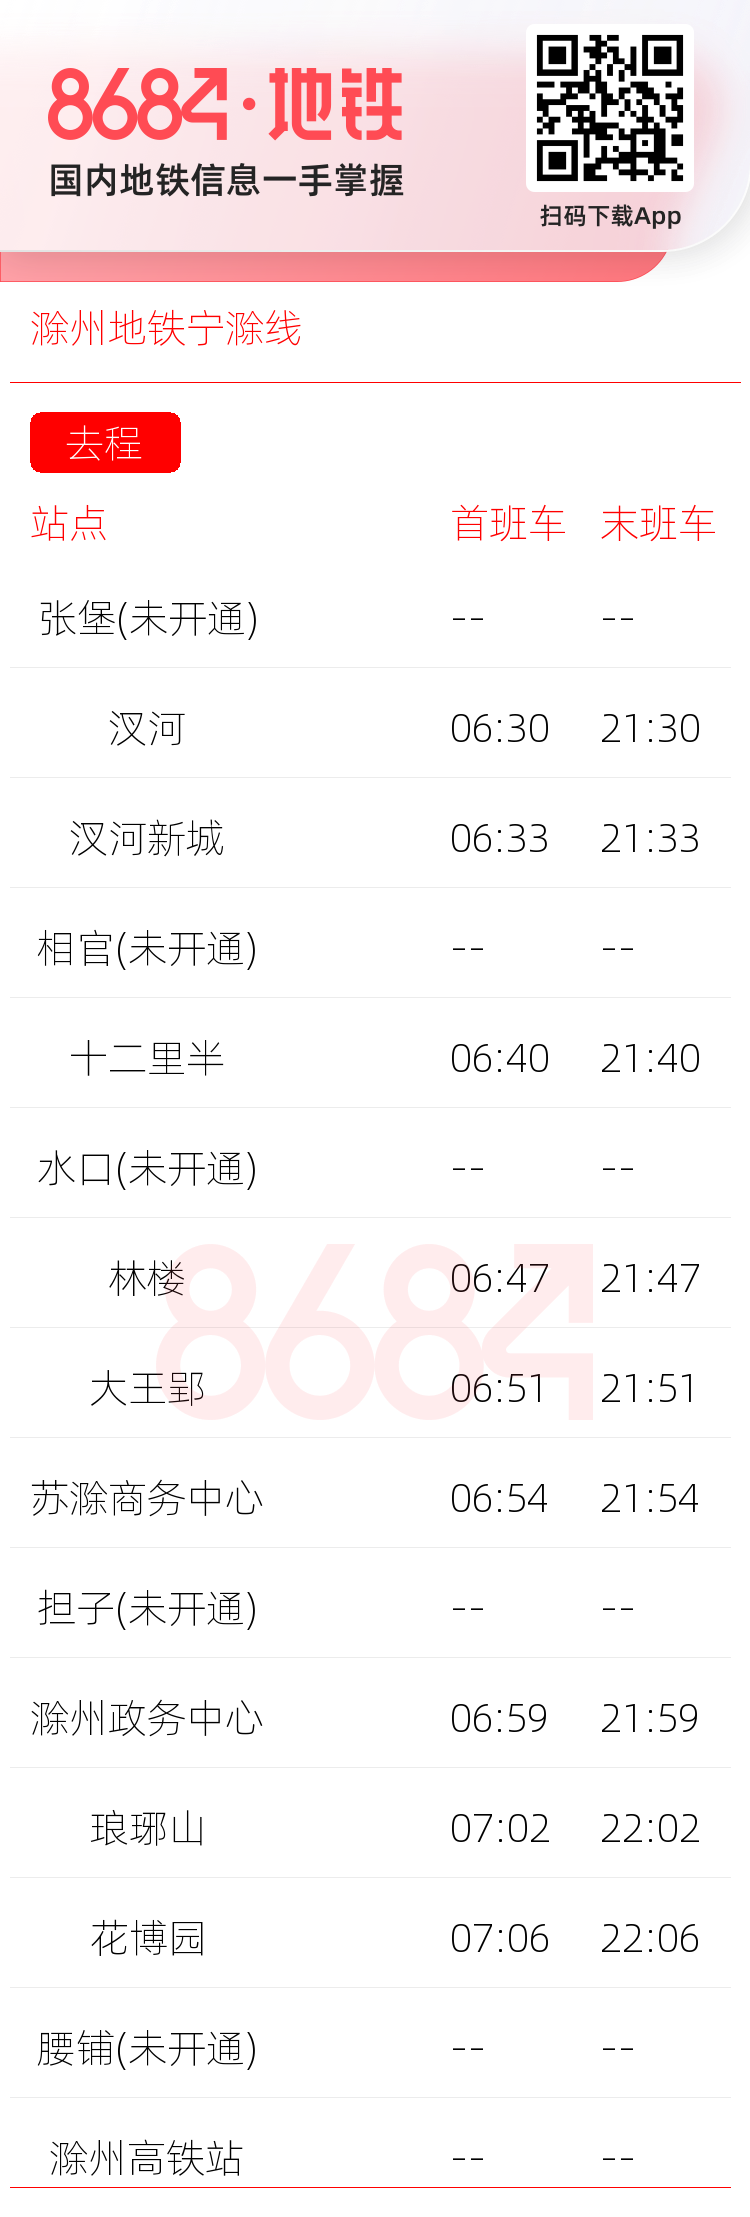 滁州地铁宁滁线运营时间表